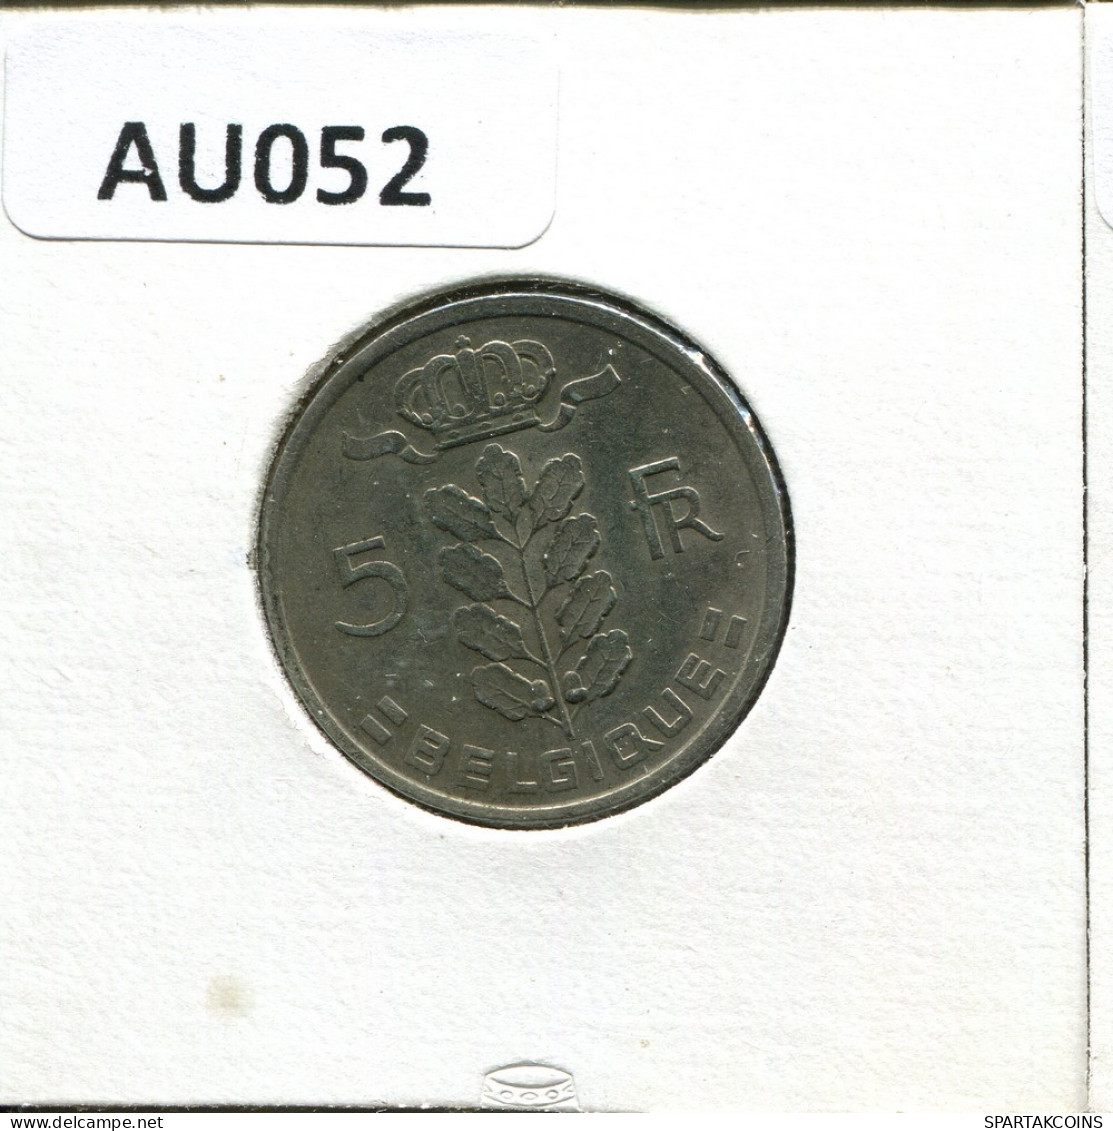 5 FRANCS 1975 FRENCH Text BÉLGICA BELGIUM Moneda #AU052.E.A - 5 Frank